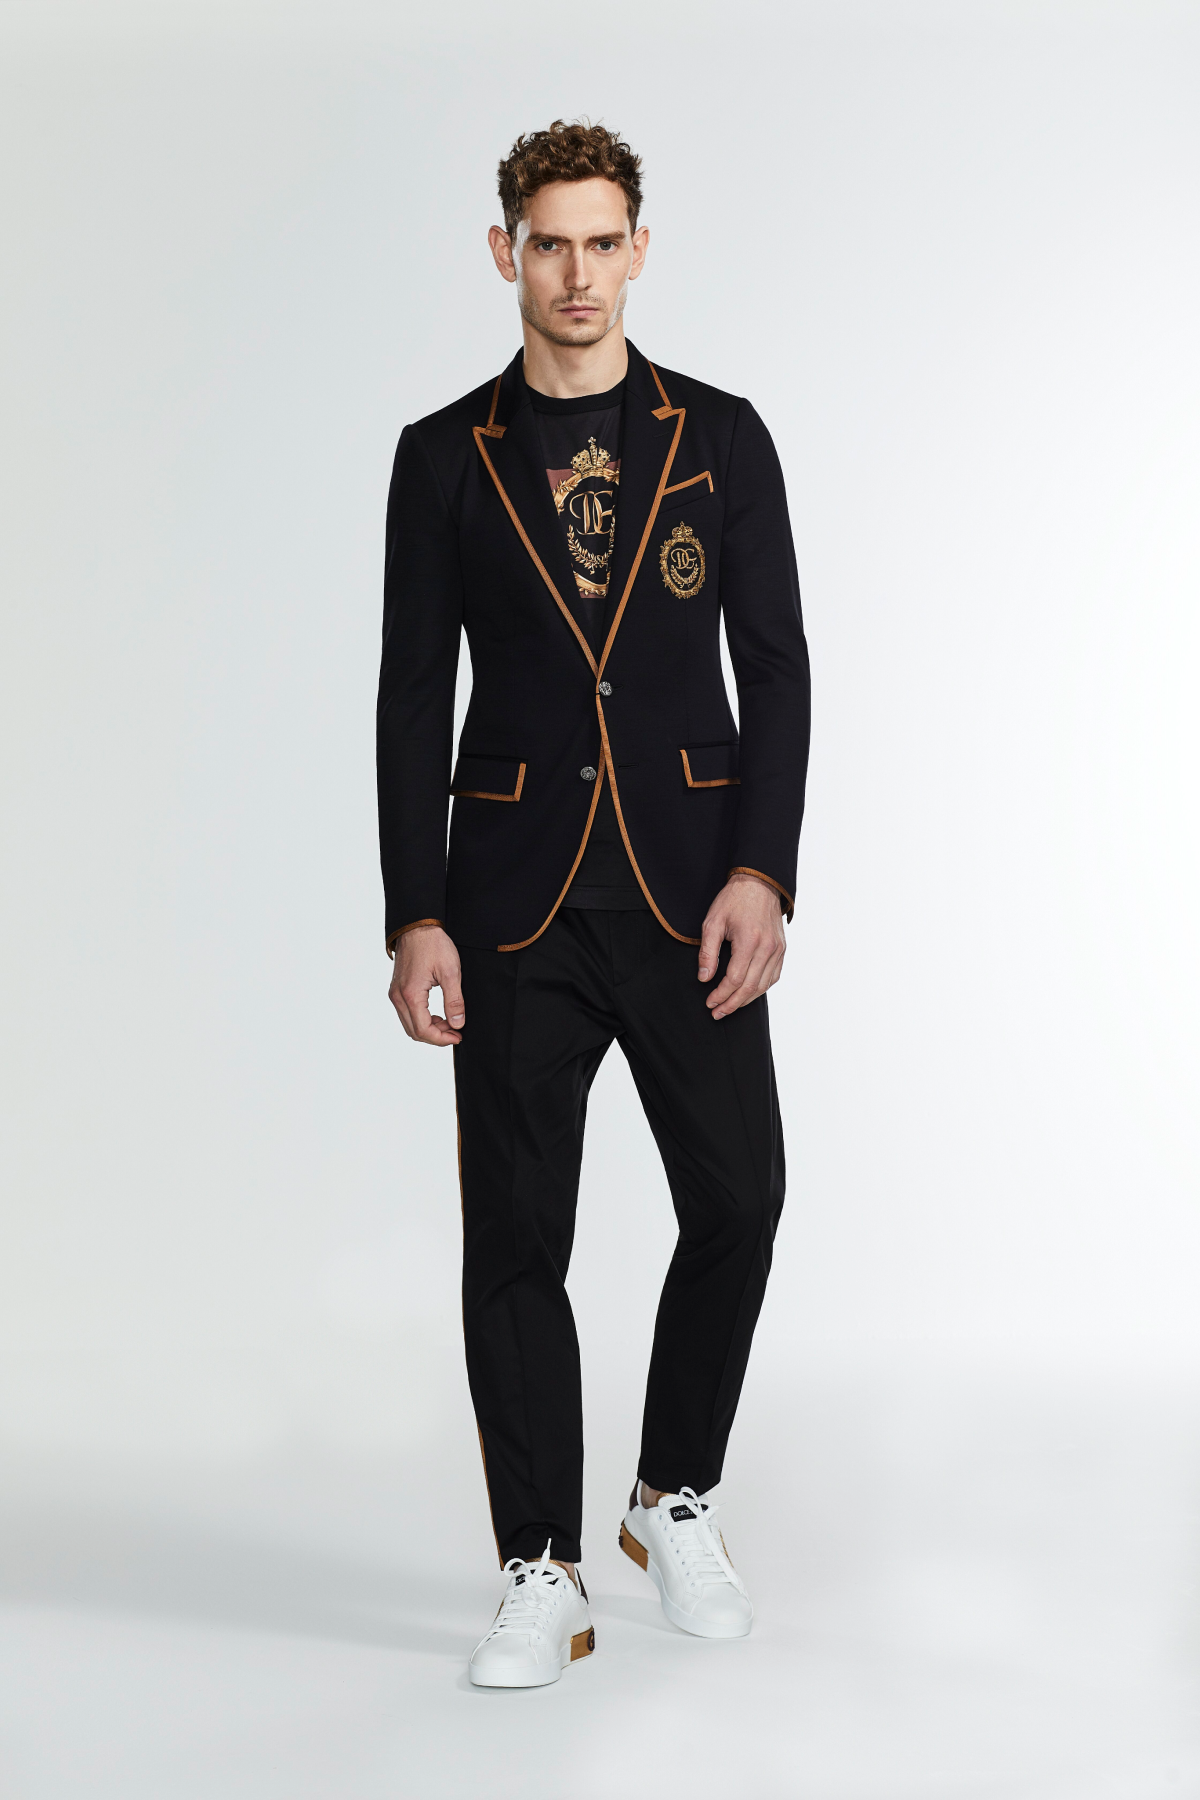 Dolce&Gabbana представил мужскую коллекцию, созданную специально для российского рынка (фото 3)